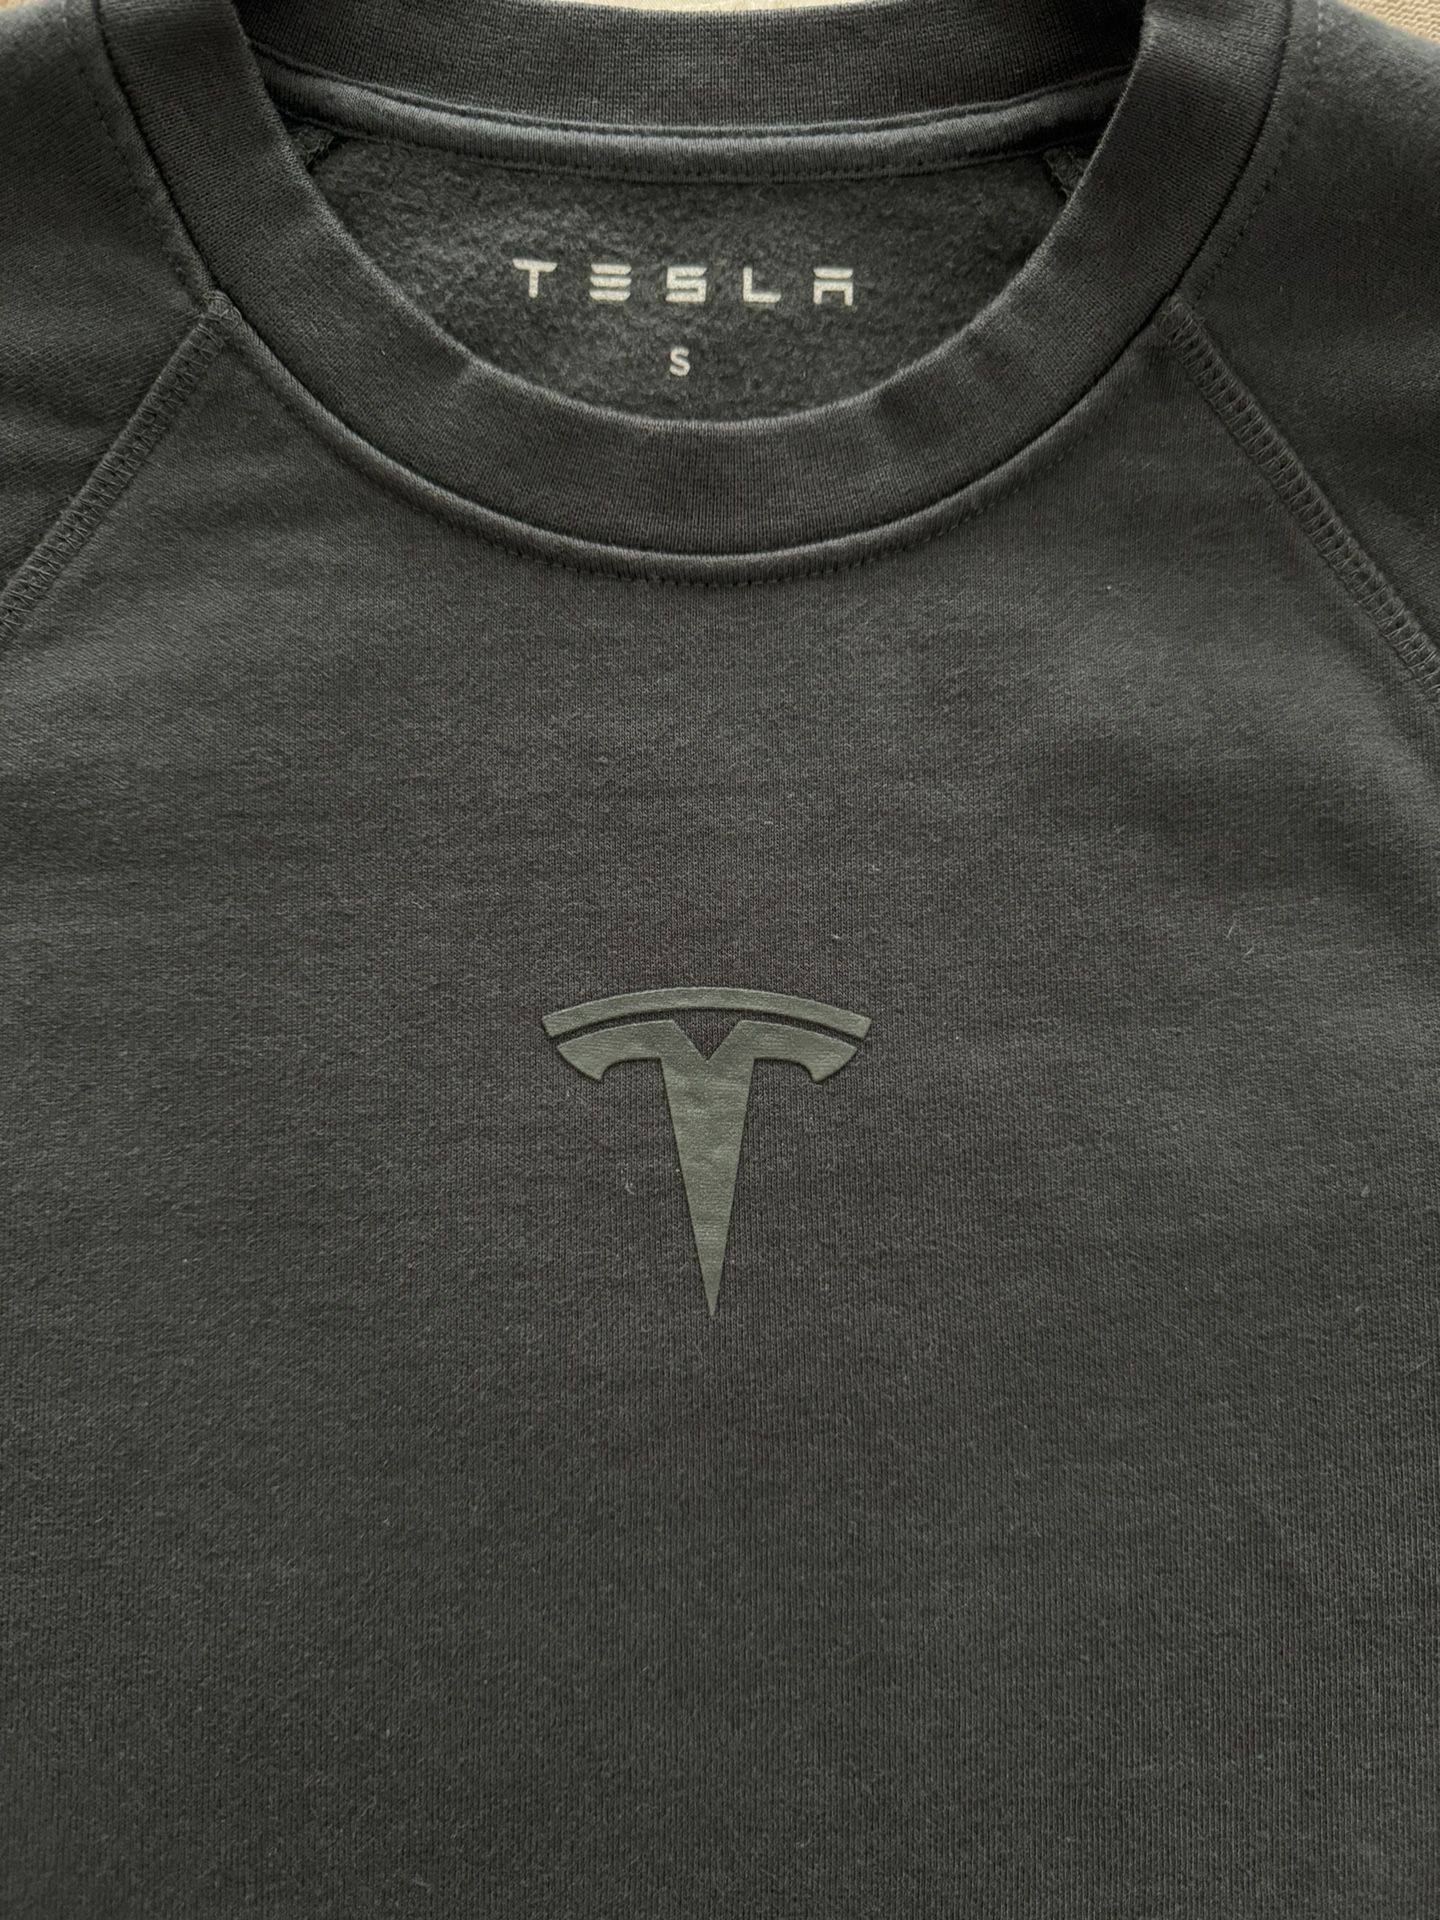 Rare Tesla Sweatshirt Black (S)